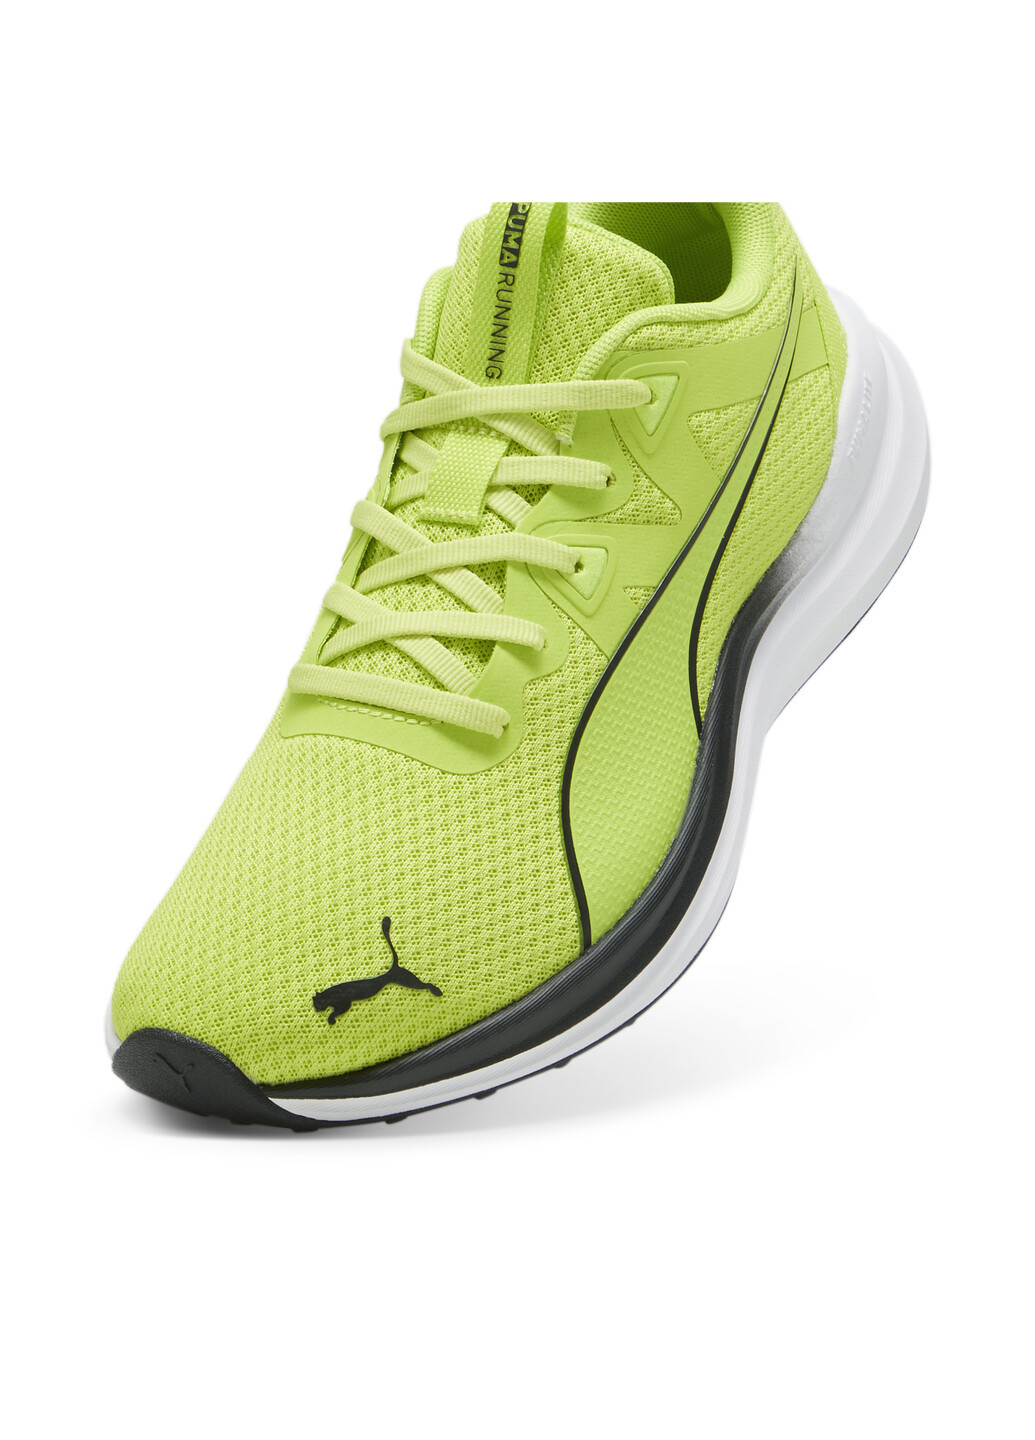 Зеленые всесезонные кроссовки reflect lite running shoes Puma